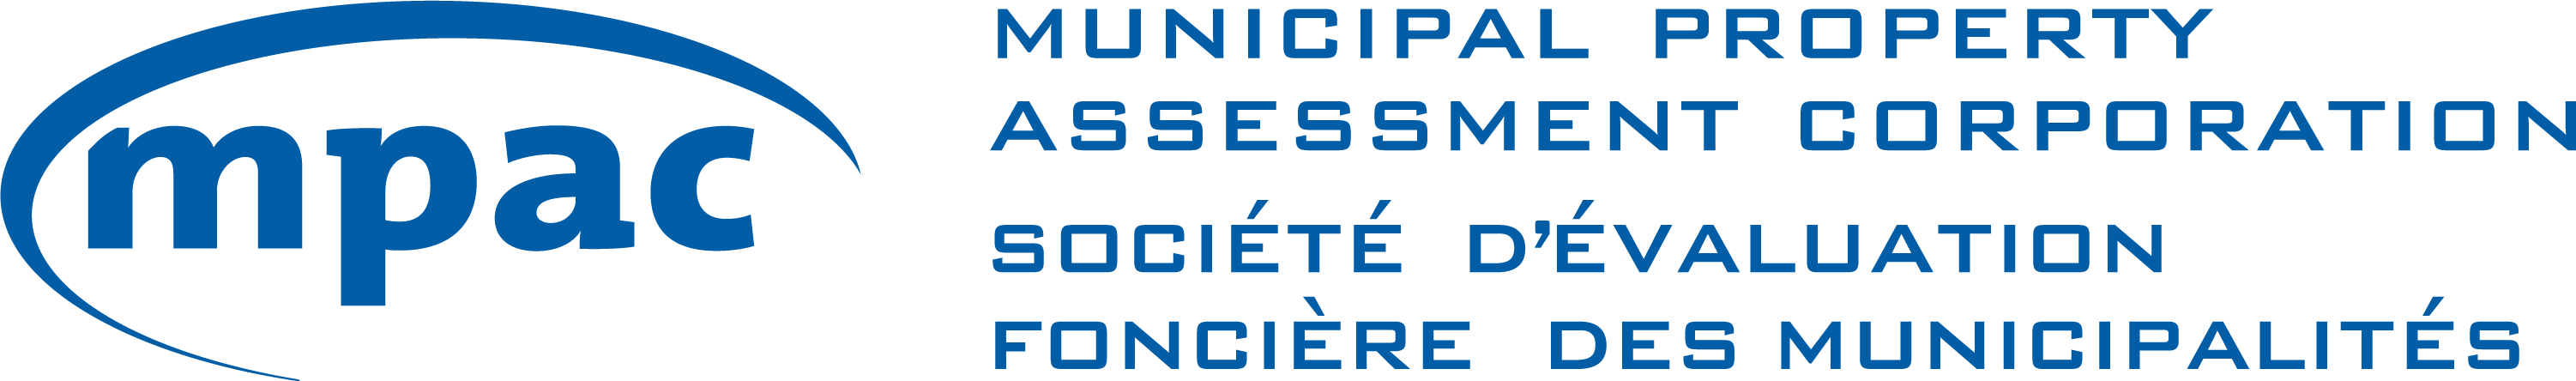 Municipal Property Assessment Corporation (acronym: MPAC) logo